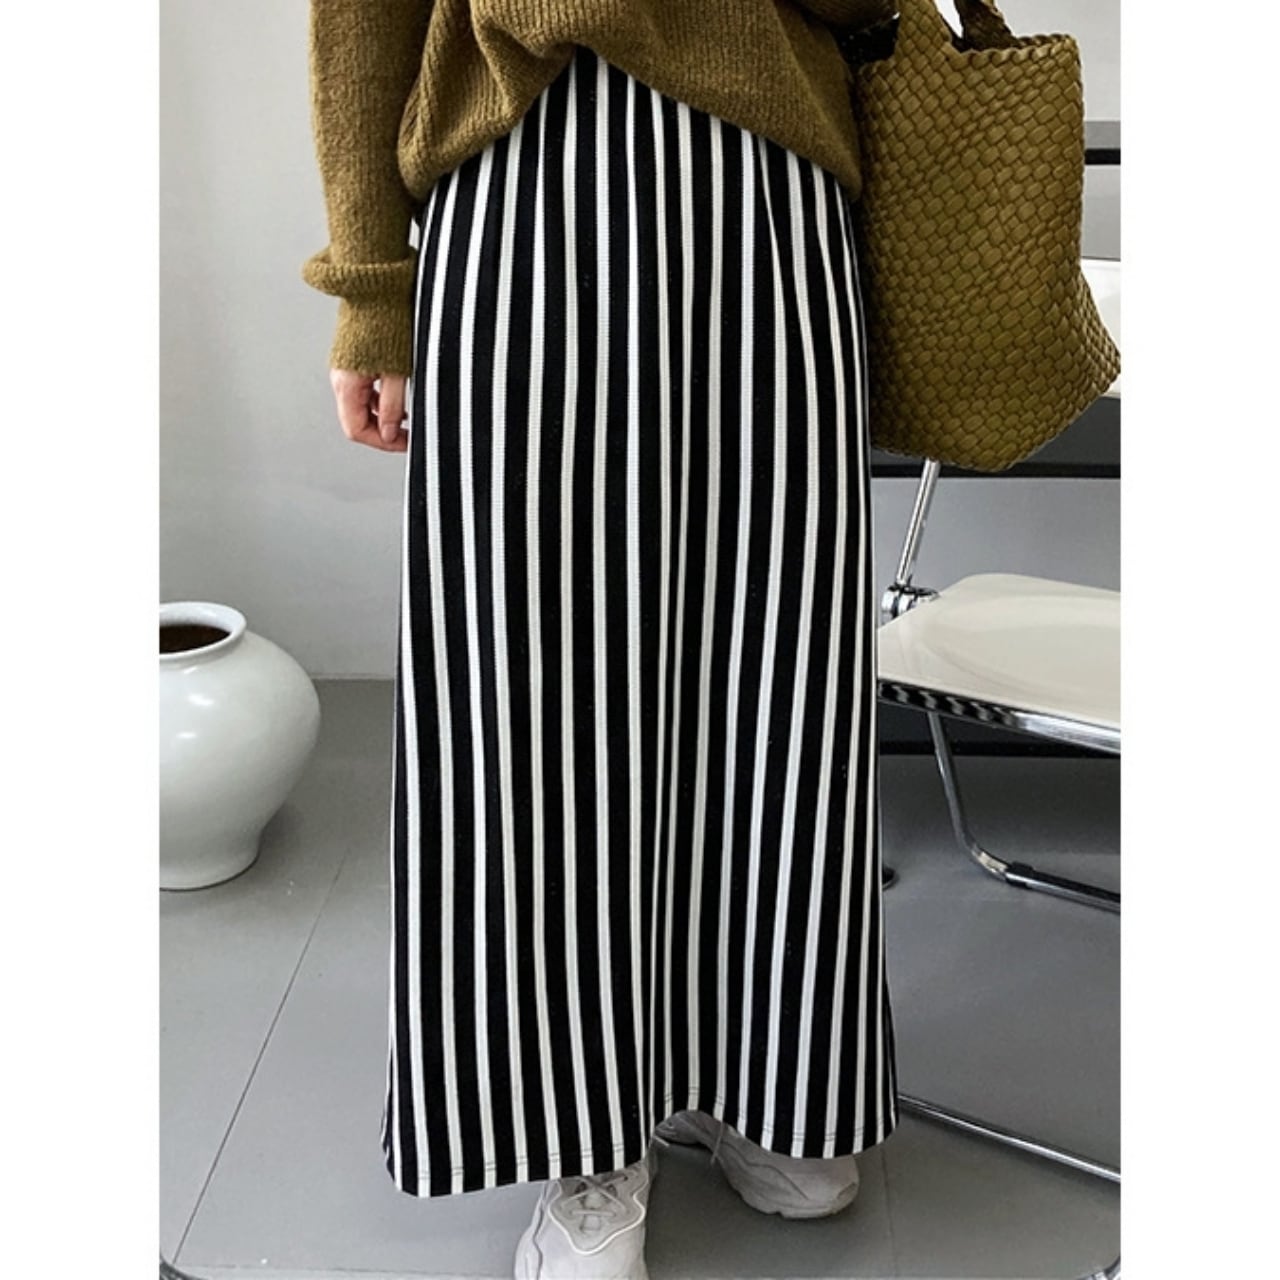 Striped long skirt KRE1403